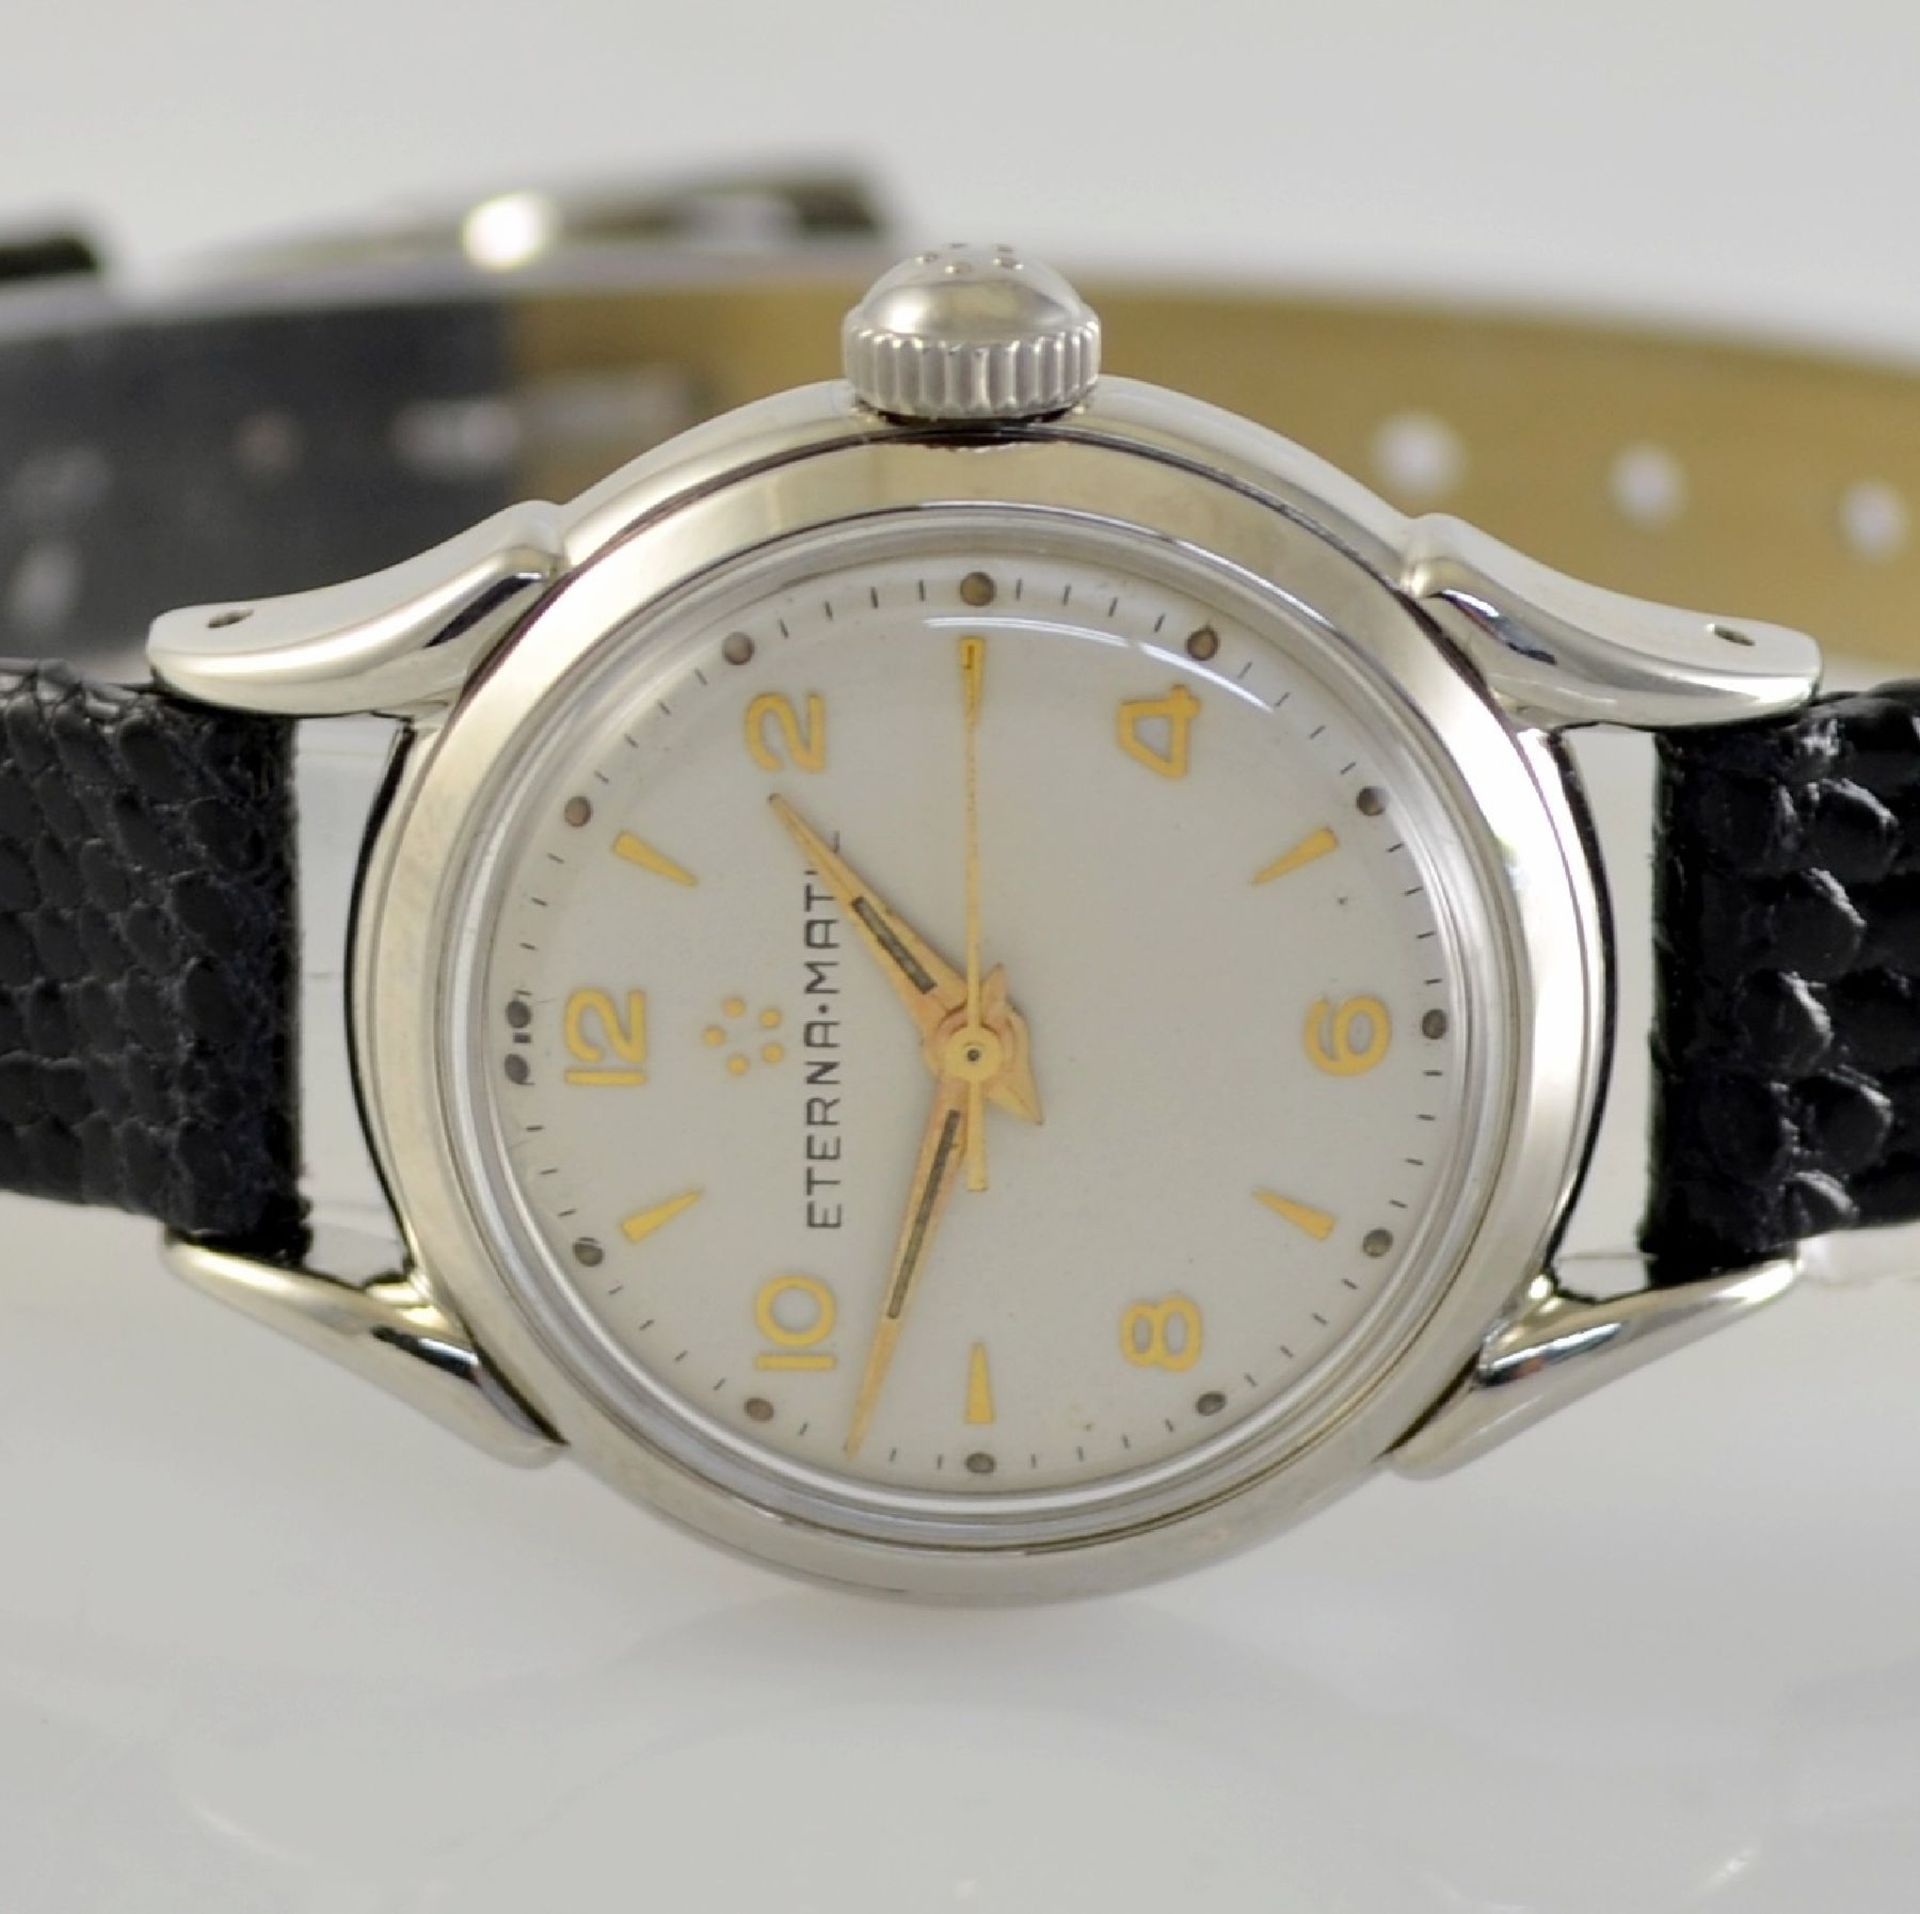 ETERNA-MATIC 2 wristwatches in steel, Switzerland around 1950, screwed down cases with unusual lugs, - Bild 8 aus 13